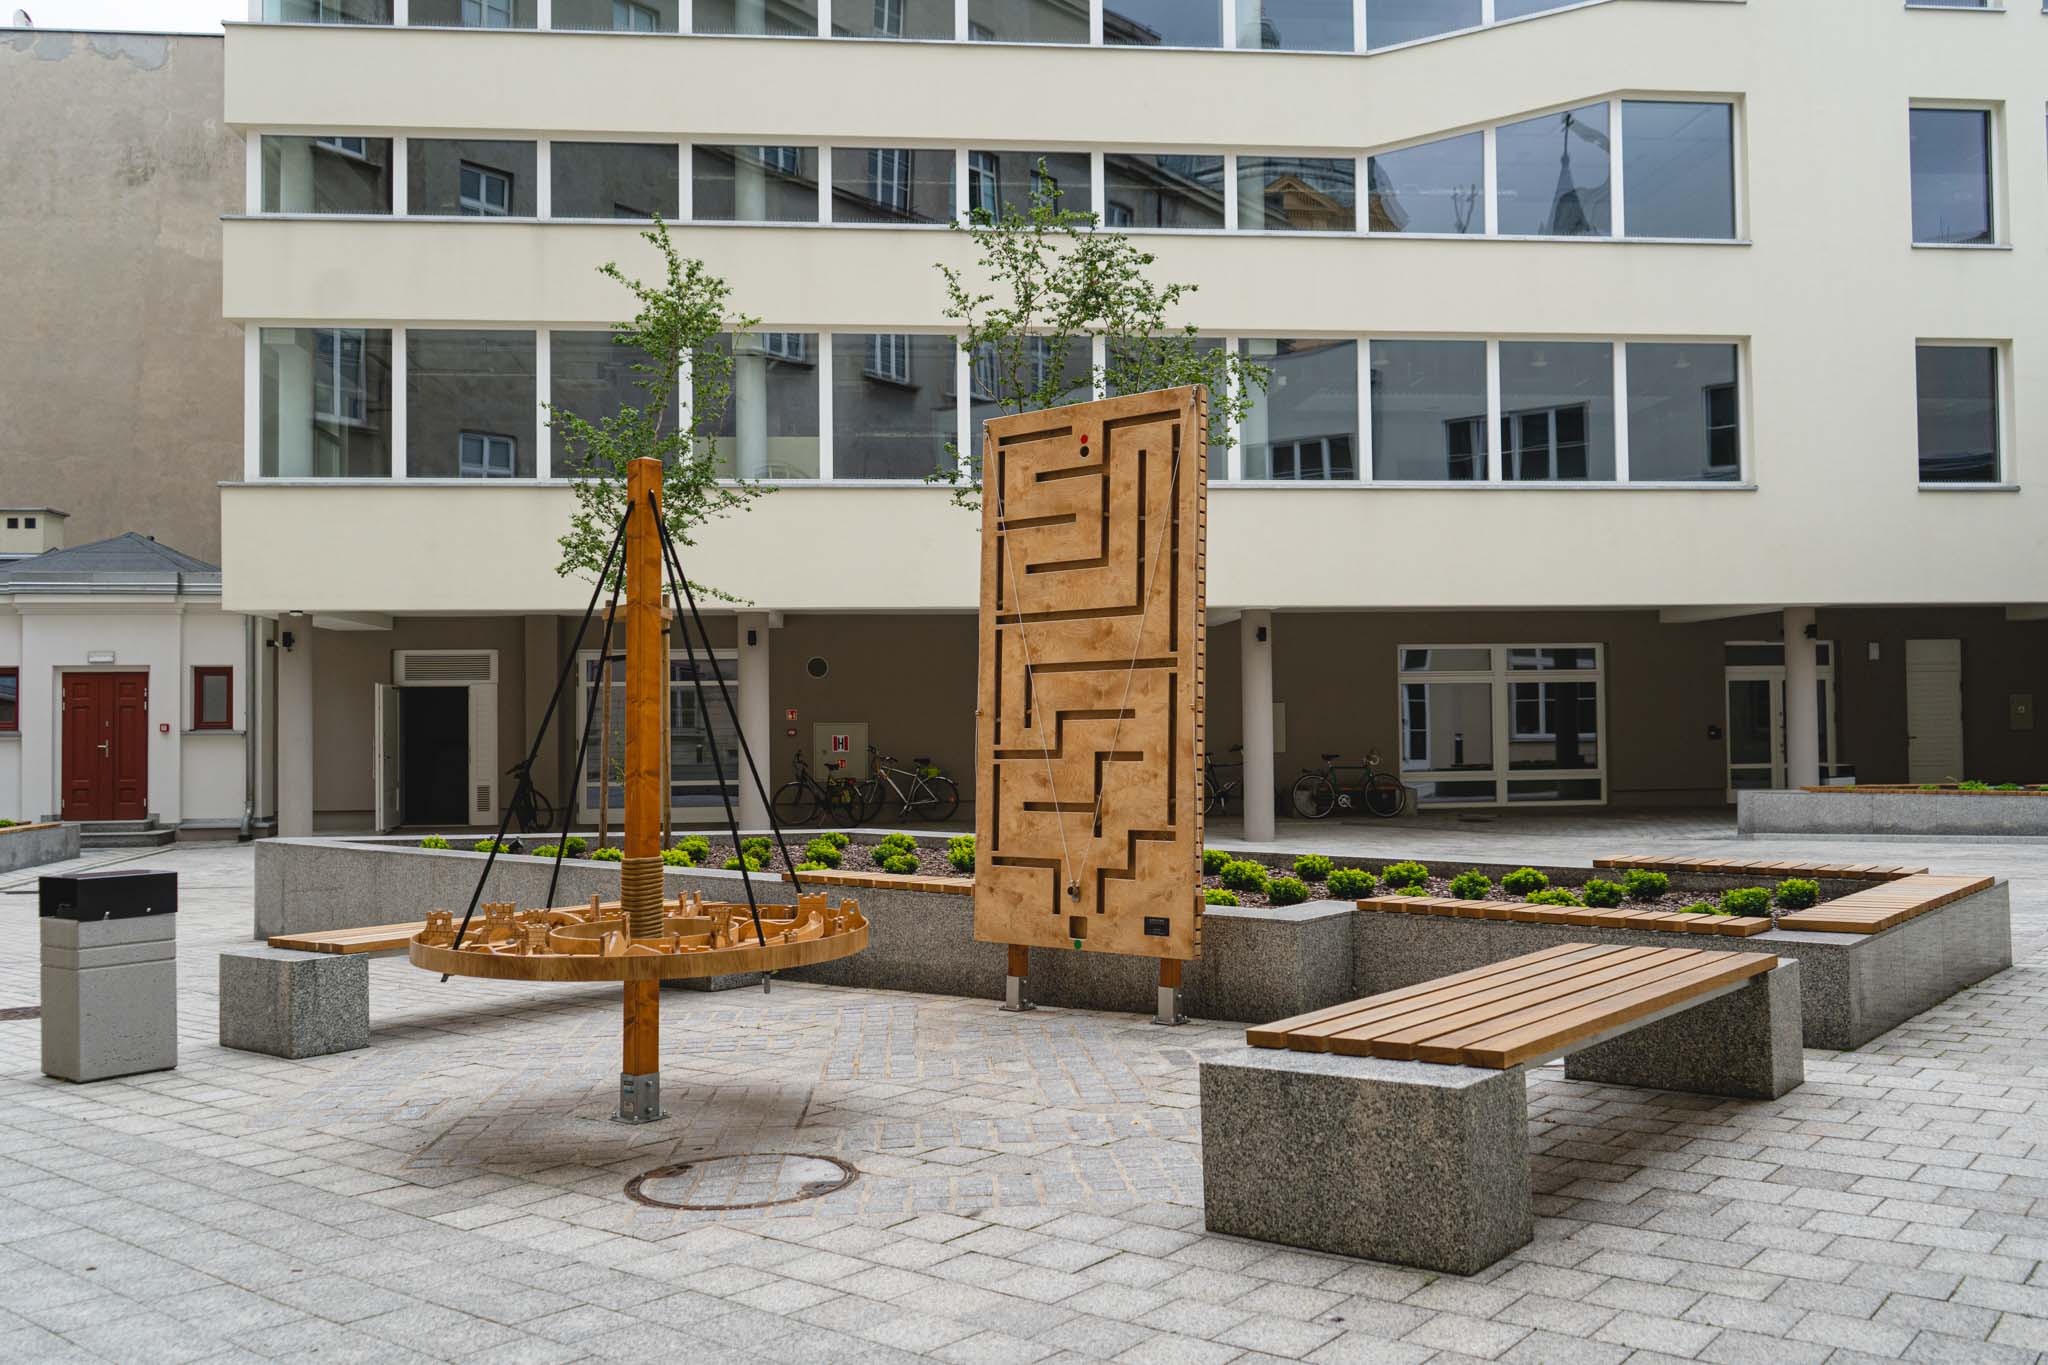 Elewacja budynku Muzeum Archeologicznego i Etnograficznego w Łodzi wraz z dziedzińcem, na którym stoją ławki oraz atrakcje dla dzieci.